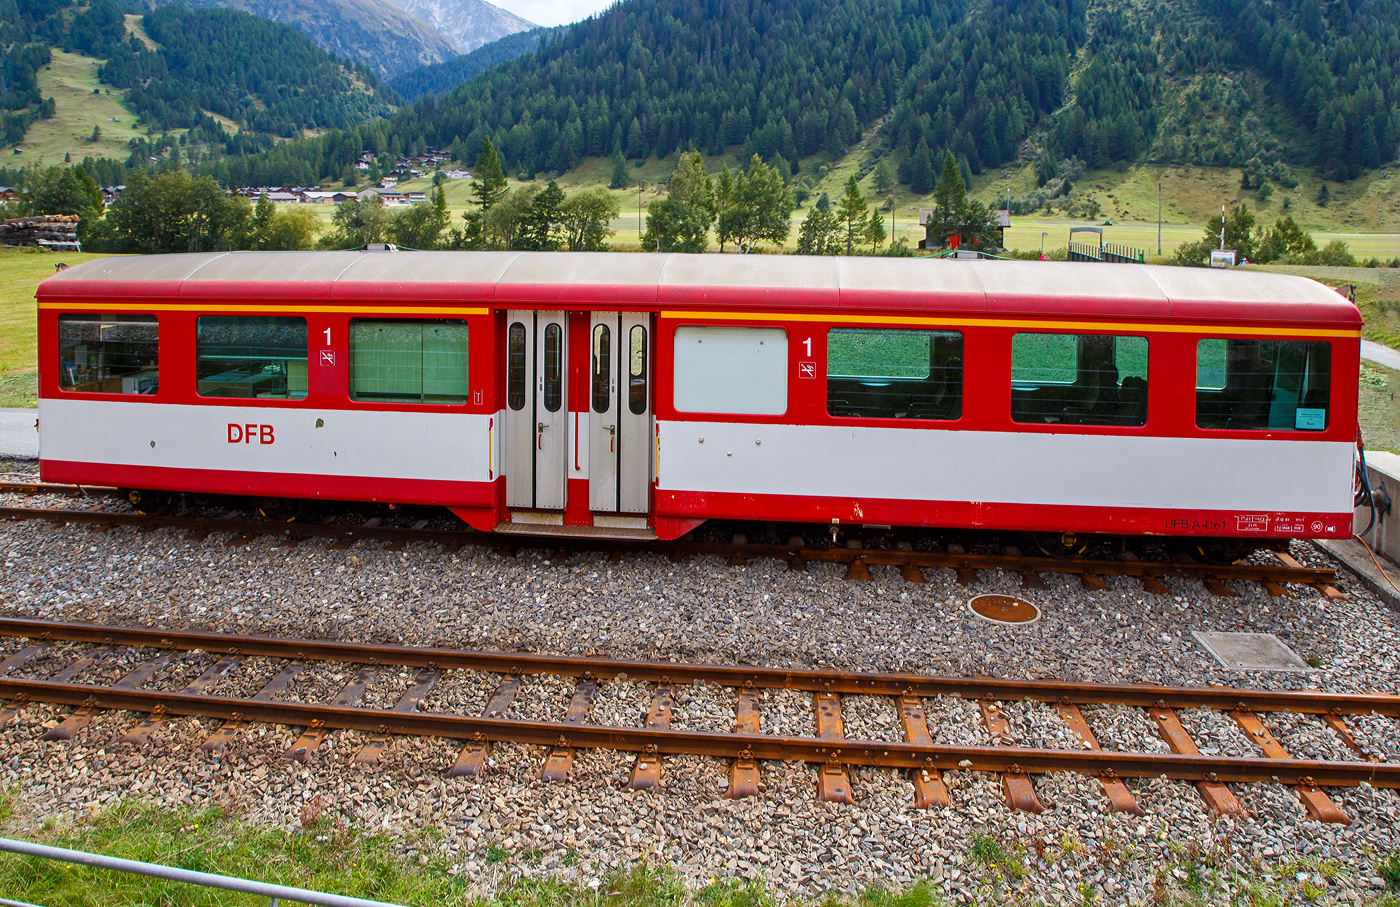 Der vierachsige Personenwagen A 4161 der DFB Dampfbahn Furka-Bergstrecke AG, ex MGB A 2061, ex BVZ A 2061, ein Mitteleinstiegswagen der 1. Klasse noch in MGB Lackierung, ist am 07 September 2021 in Oberwald (Wallis) abgestellt, aufgenommen aus einem fahrenden MGB-Zug heraus. Aktuell ist der Wagen frisch lackiert als DFB Infowagen A 4161 im Bahnhof Oberwald abgestellt (als Provisorium Oberwald, trägt er denVermerk darf den Bhf. Oberwald nicht Verlassen). 

Der Wagen wurde 1961 von SIG (Schweizerische Industrie-Gesellschaft) in Neuhausen am Rheinfall gebaut und an die damalige BVZ (Brig-Visp-Zermatt-Bahn / BVZ Zermatt-Bahn) als A 2061 geliefert. Nach dem Zusammenschuss am 01. Januar 2003 der BVZ mit der Furka-Oberalp-Bahn (FO) zur Matterhorn-Gotthard-Bahn wurde er zum MGB A 2061, im Jahr 2016 ging er dann an die DFB. 

TECHNISCHE DATEN
Hersteller: SIG
Baujahr: 1961
Spurweite: 1.000 mm (Meterspur)
Anzahl der Achsen 4 (2´2´)
Länge über Puffer : 15.780 mm
Länge des Wagenkastens: 14.900 mm
Breite: 2.656 mm
Höhe: 3.365 mm
Drehzapfenabstand: 11.010 mm
Achsabstand im Drehgestell: 1.800 mm
Laufraddurchmesser: 675 mm
Bremszahnrad: System Abt  (Drehgestell Seite Visp/Talseite)
Eigengewicht:  11,8 t 
Ladegewicht:  3 t
Zul. Höchstgeschwindigkeit: 90 km/h
Anzahl der Fenster (1.400 mm breit): 6 (WC-Seite) bzw. 7
Sitzplätze: 34 und 2 Klappsitze
Stehplätze: 6
Lichte Türbreite: 2 x 610 mm
Toiletten: 1
Heizung: Zugsammelschiene RhB/MGB
Bremsen: automatische Vakuum- und Handbremse
Zulassungen: MGB und RhB